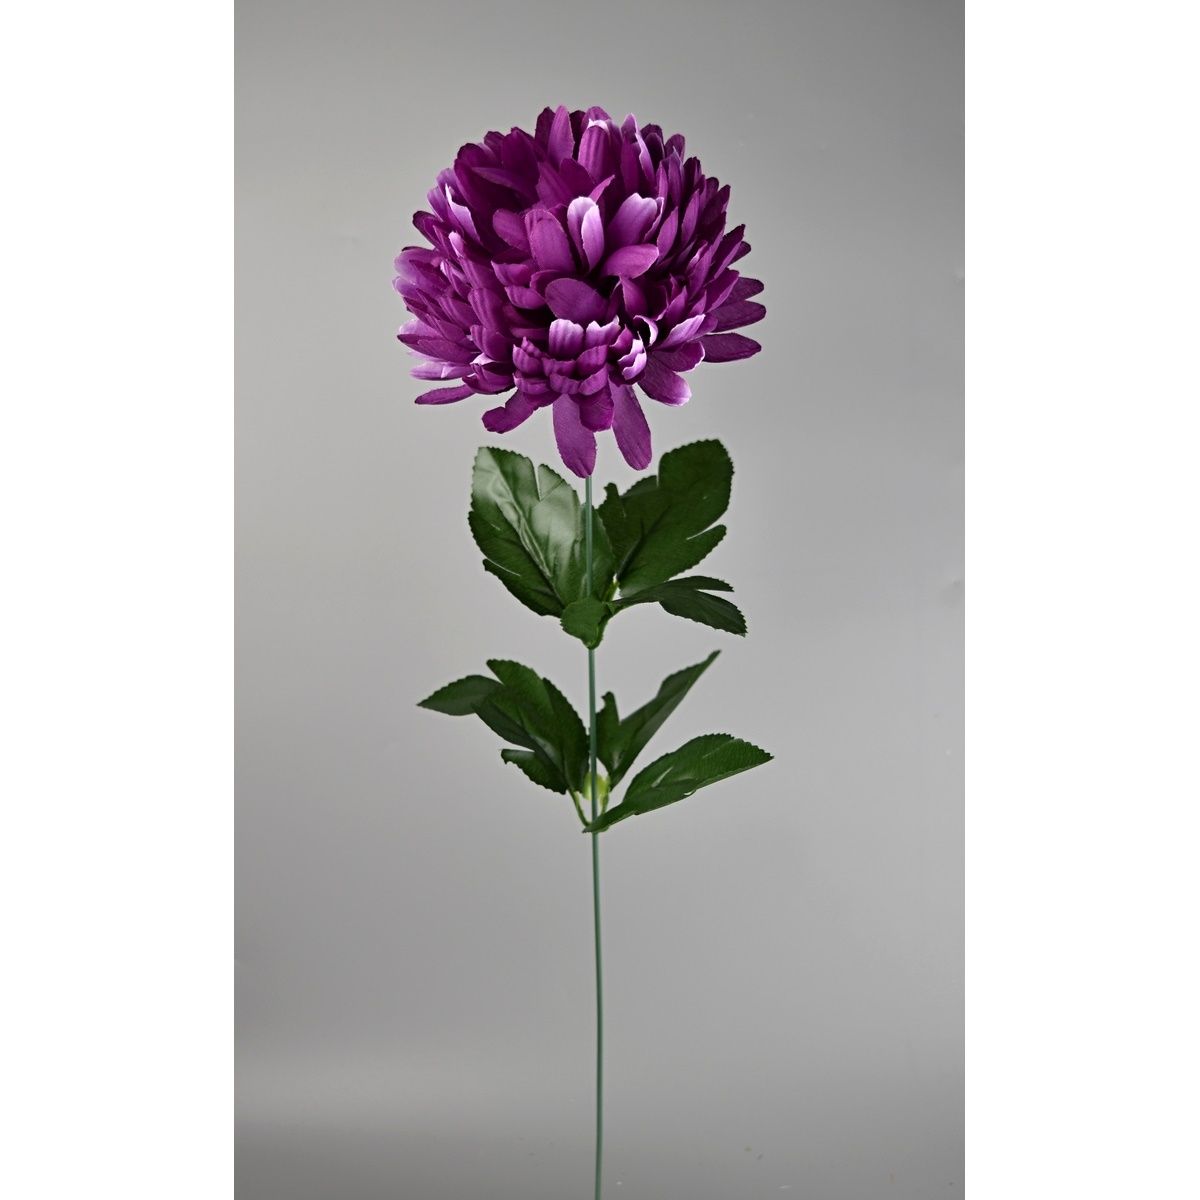 Umělá květina Chrysantéma 50 cm, fialová - 4home.cz